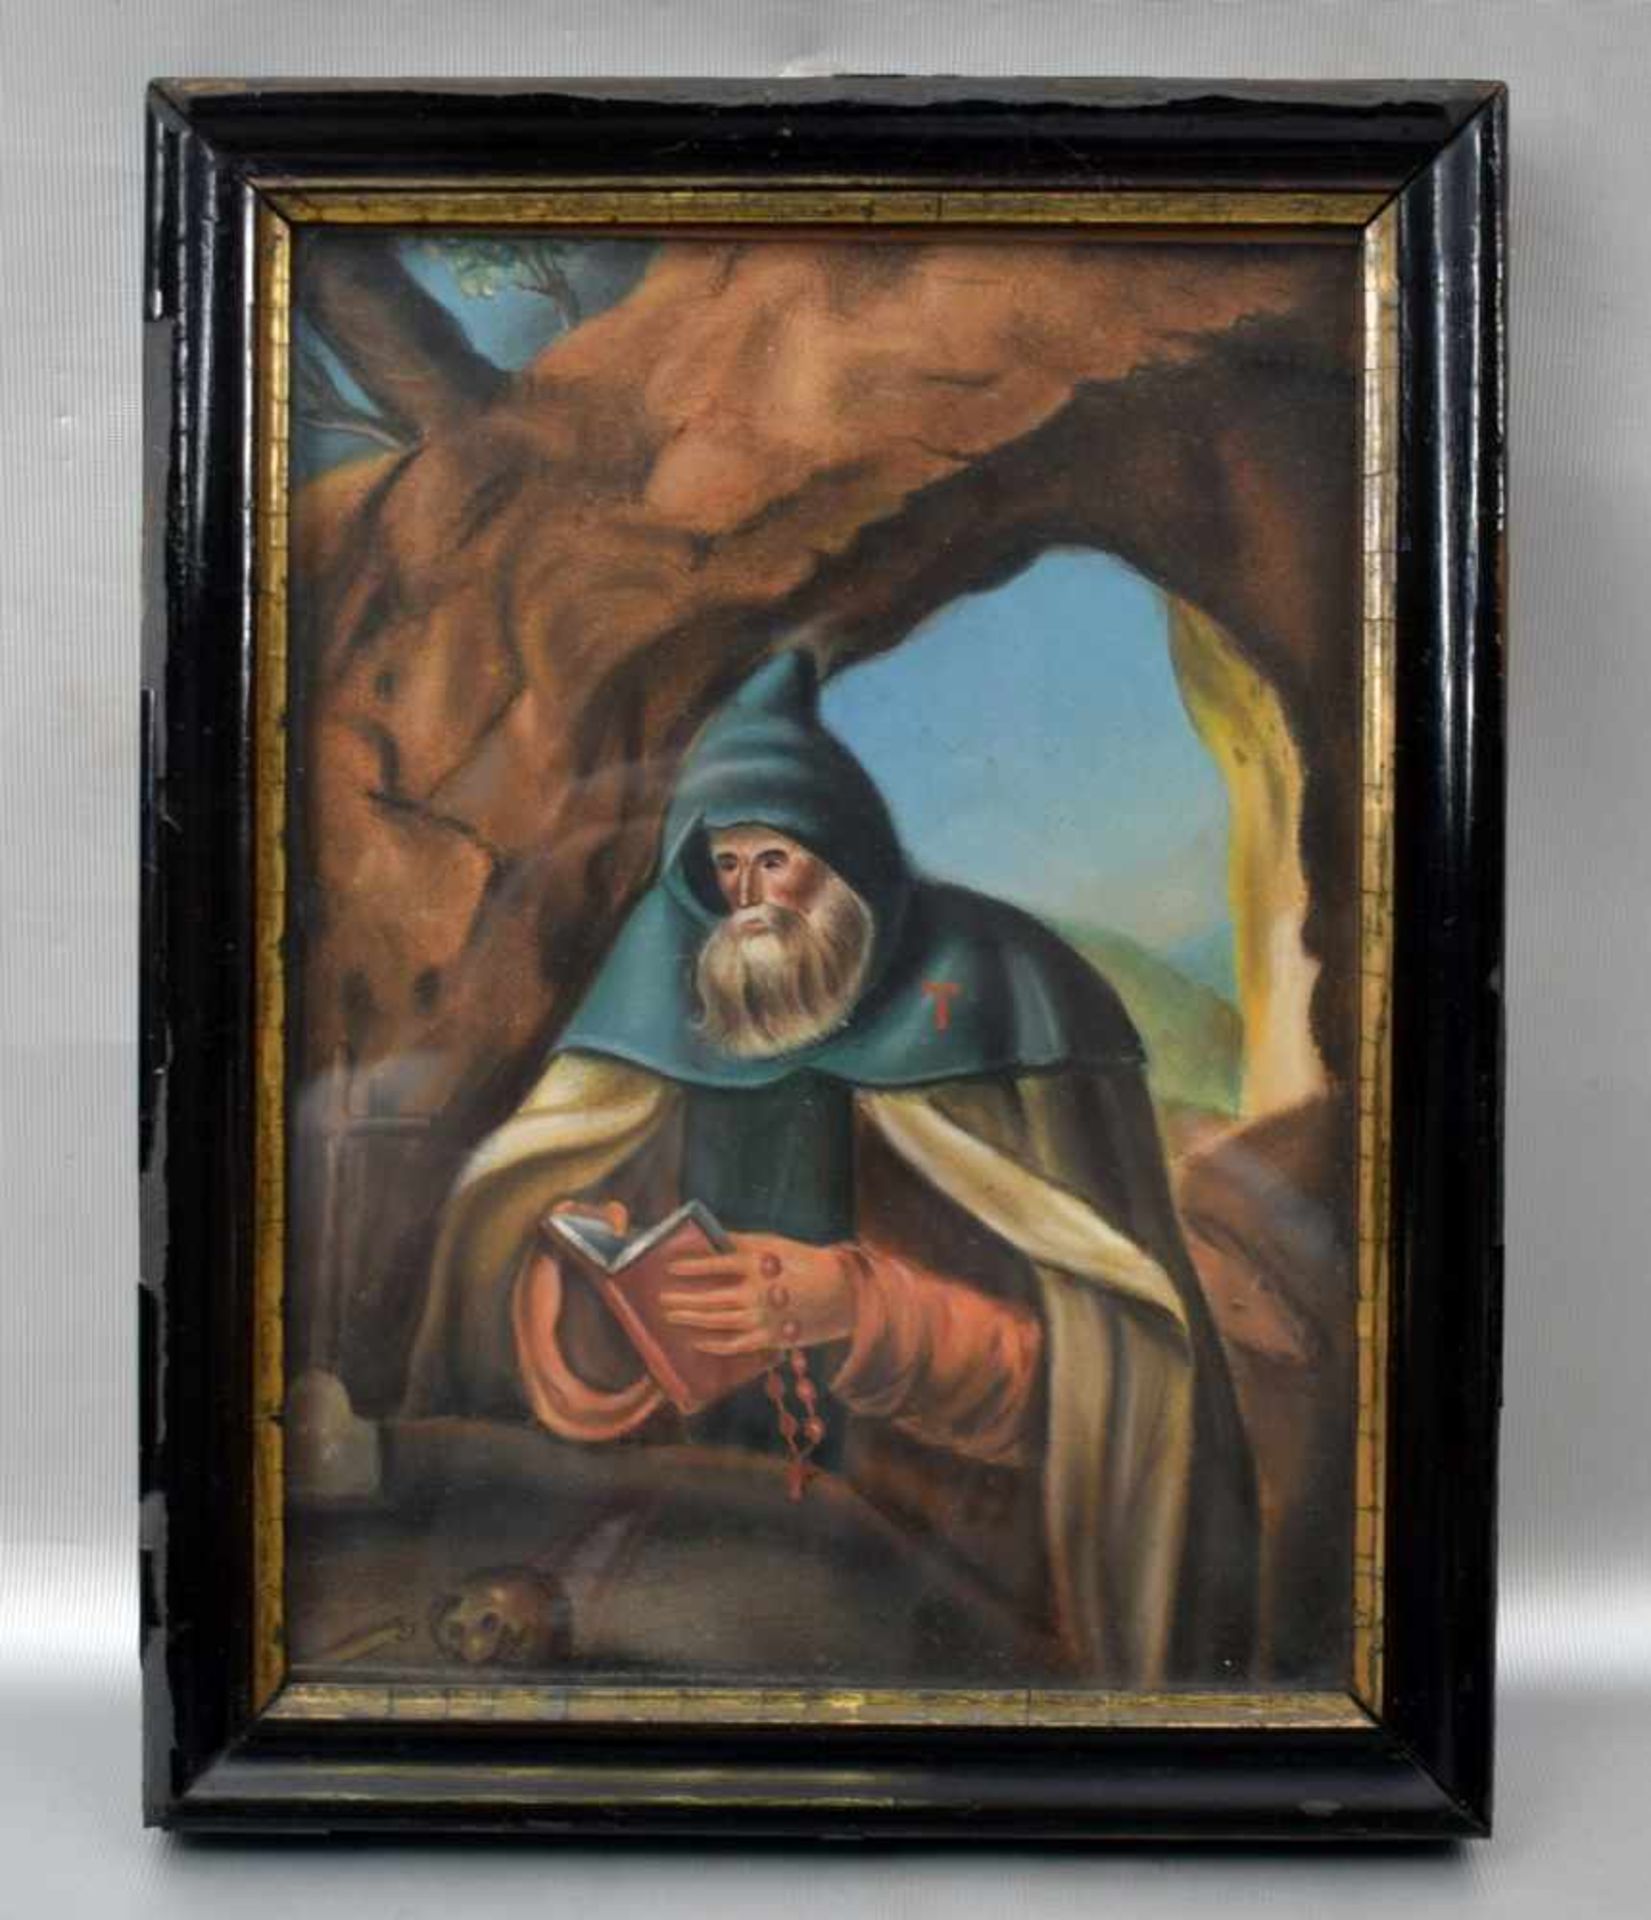 Mischtechnik Mönch mit Gebetbuch und Rosenkranz in einer Höhle, 18 X 25 cm, Rahmen